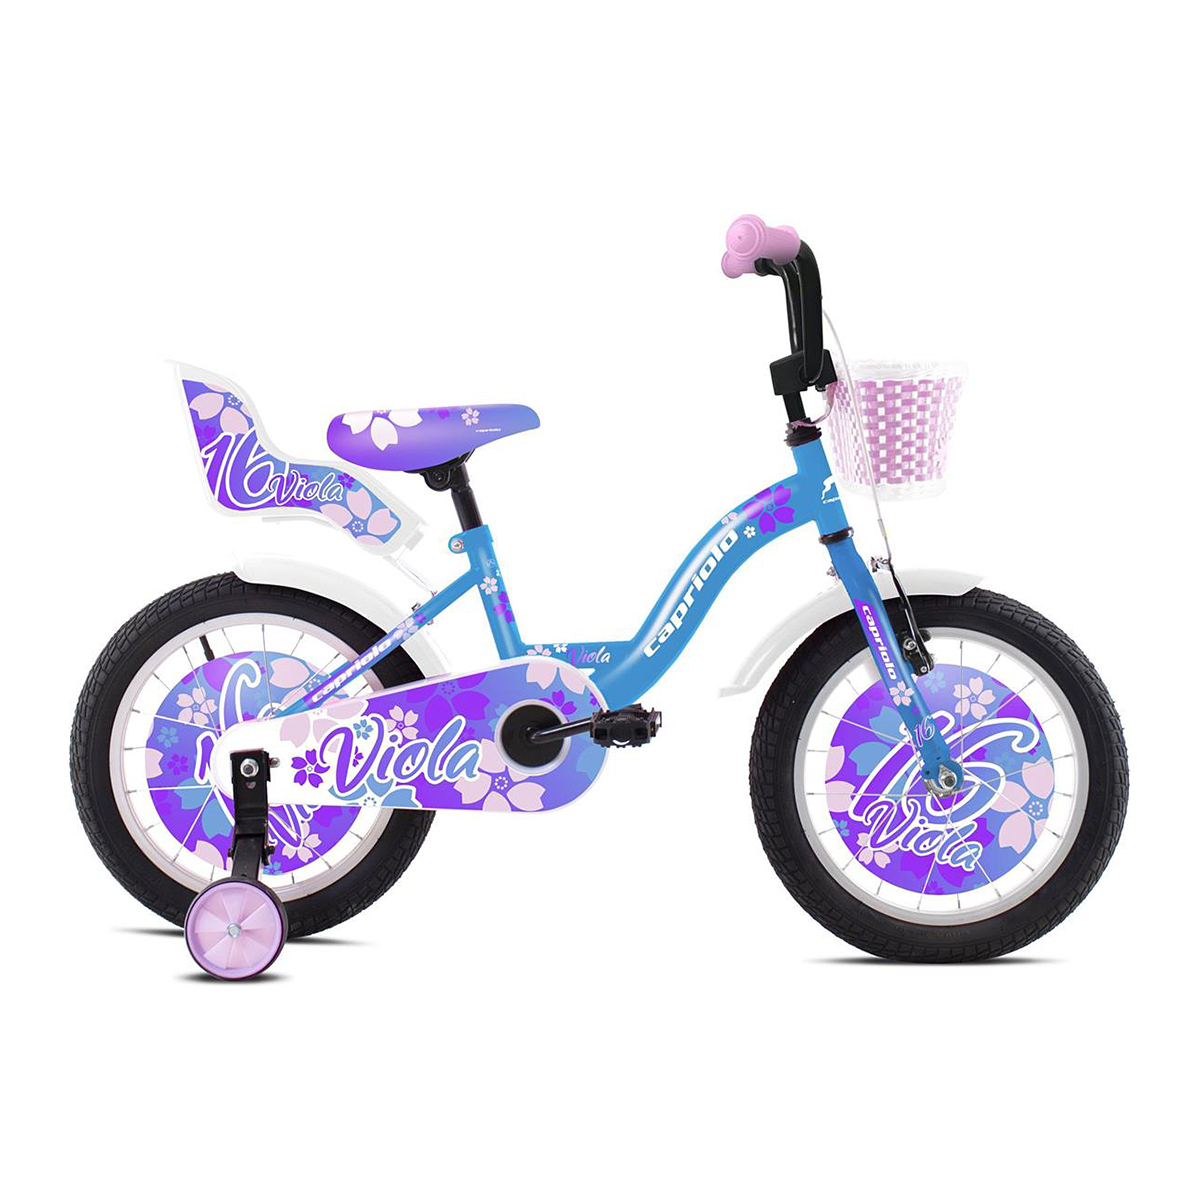 Capriolo Bicikl Bmx16"Ht Viola Blue Purple | BikerShop